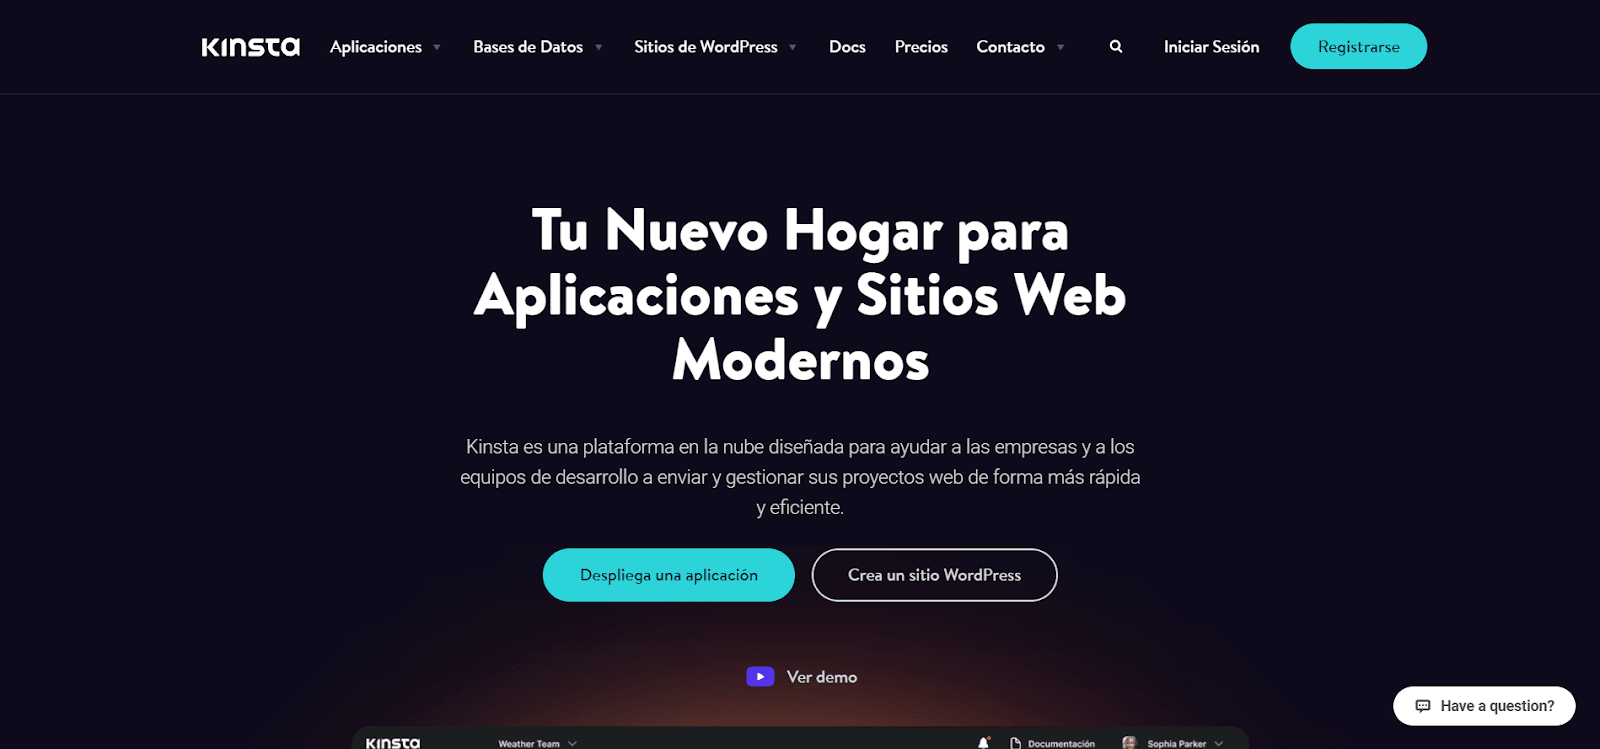 La page d'accueil de Kinsta en espagnol.